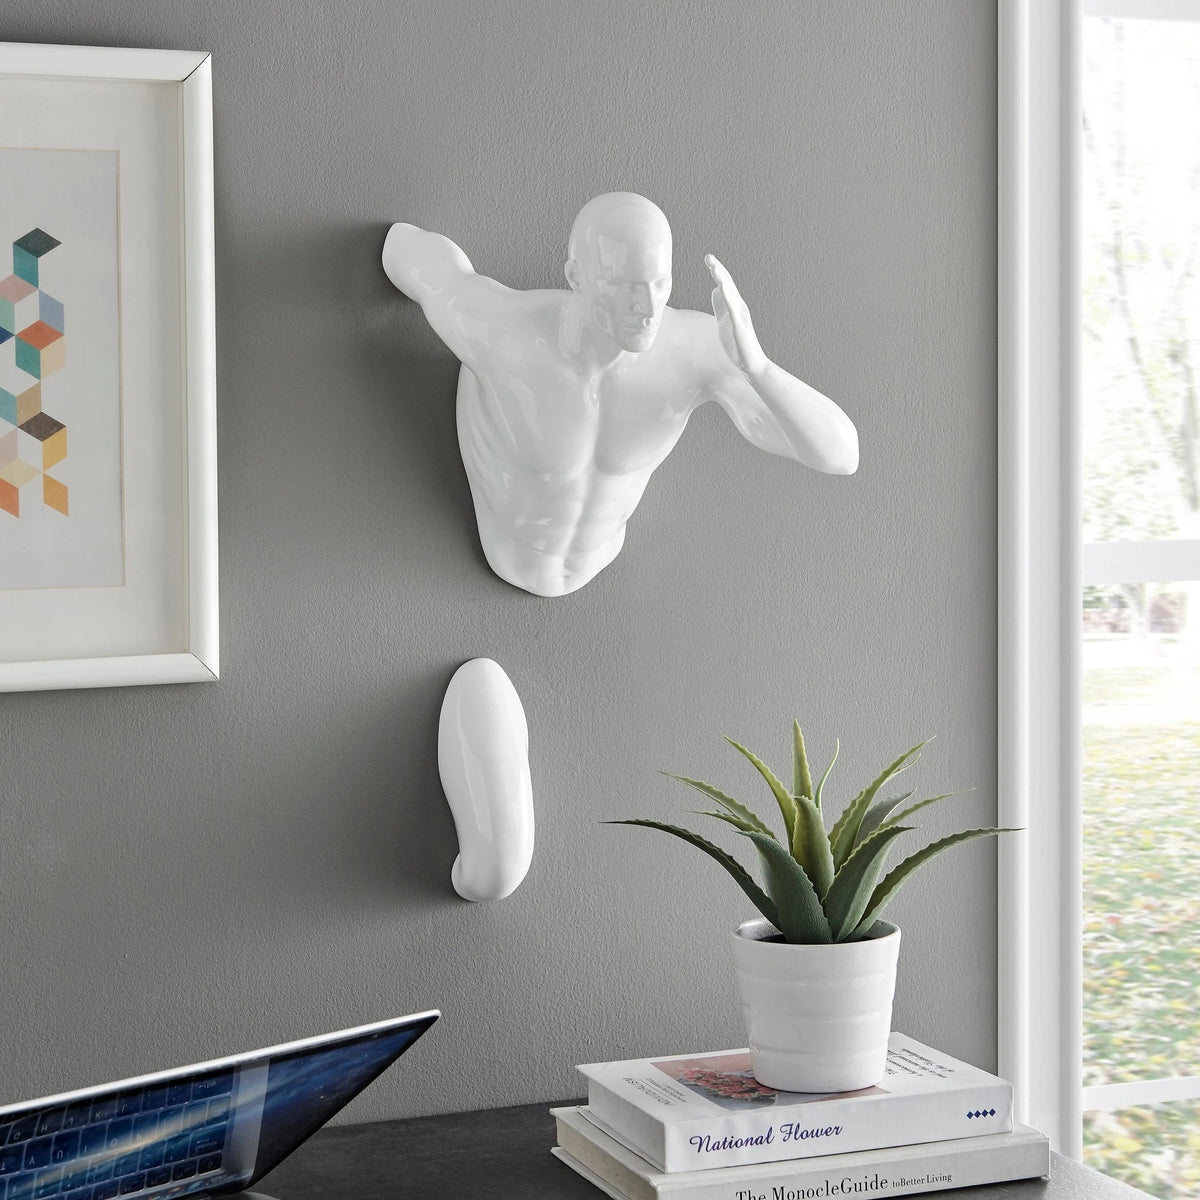 Wall Runner Man Sculpture White 20 Inch / Modern Home Decor